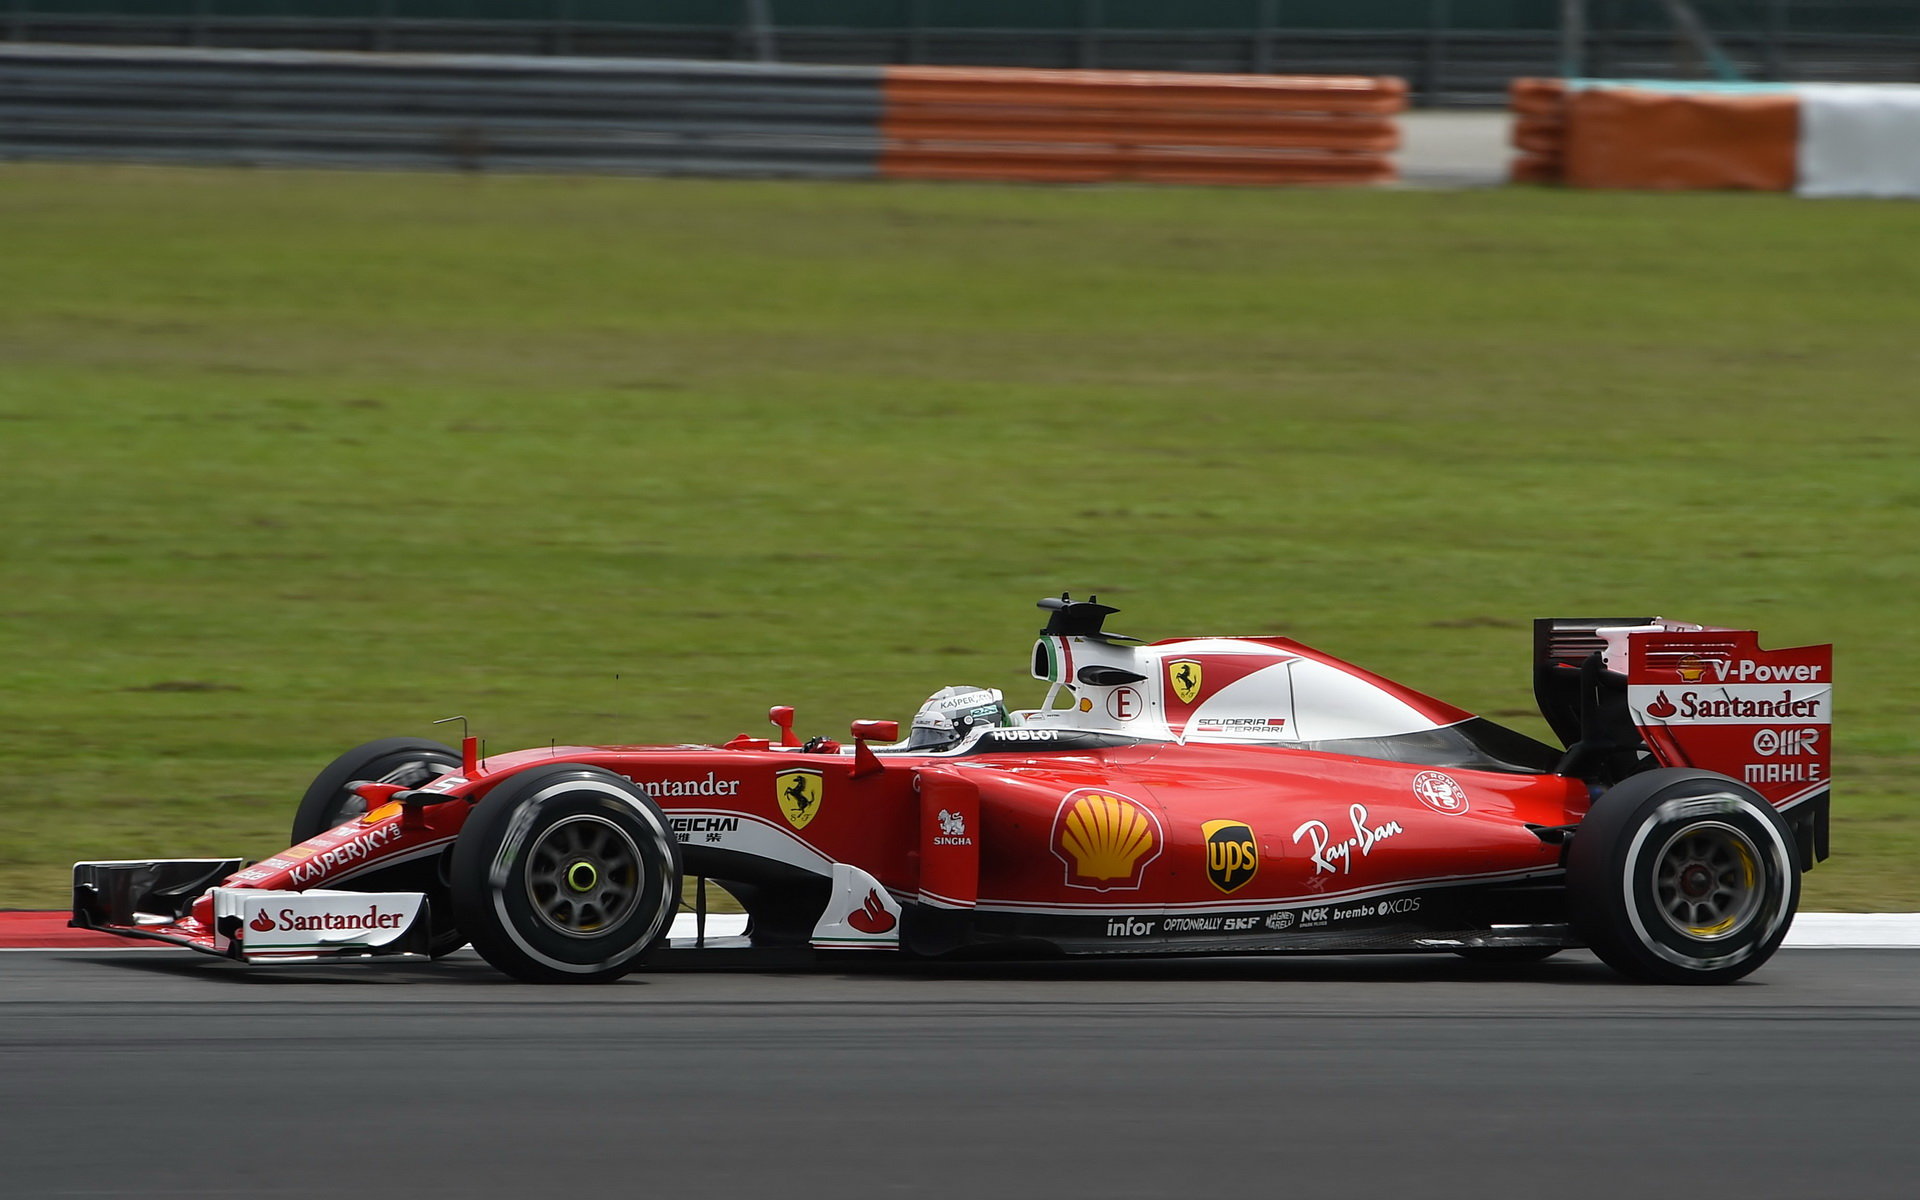 Ferrari v Suzuce v kvalifikaci porazilo Red Bully, jak to bude zítra ráno v závodě?